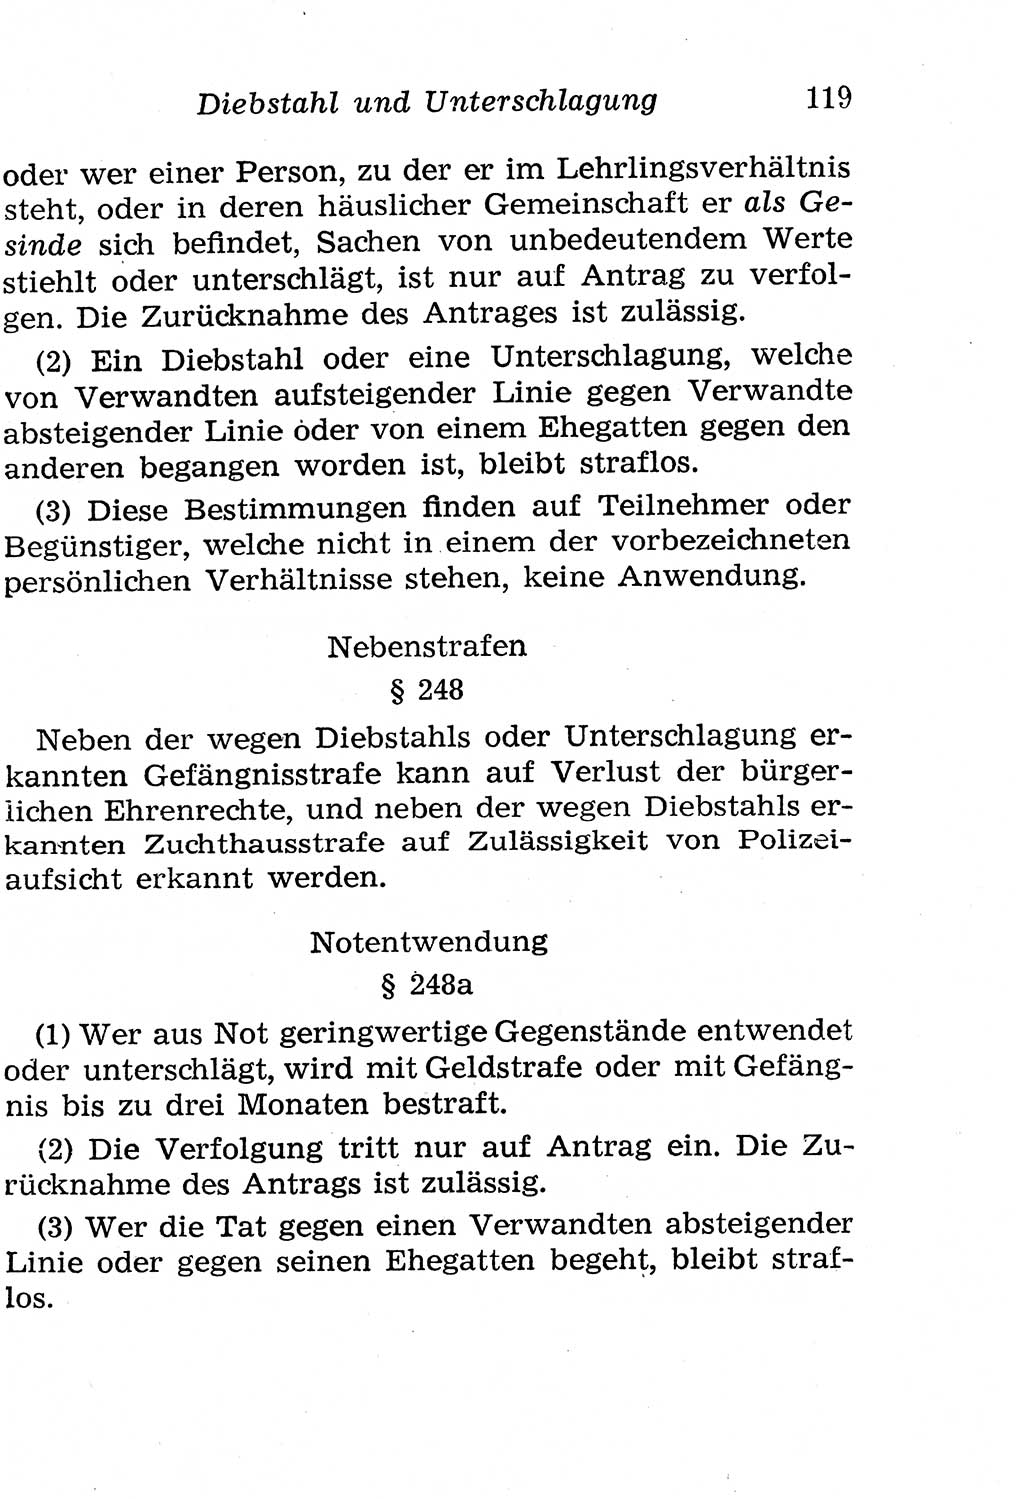 Strafgesetzbuch (StGB) und andere Strafgesetze [Deutsche Demokratische Republik (DDR)] 1958, Seite 119 (StGB Strafges. DDR 1958, S. 119)